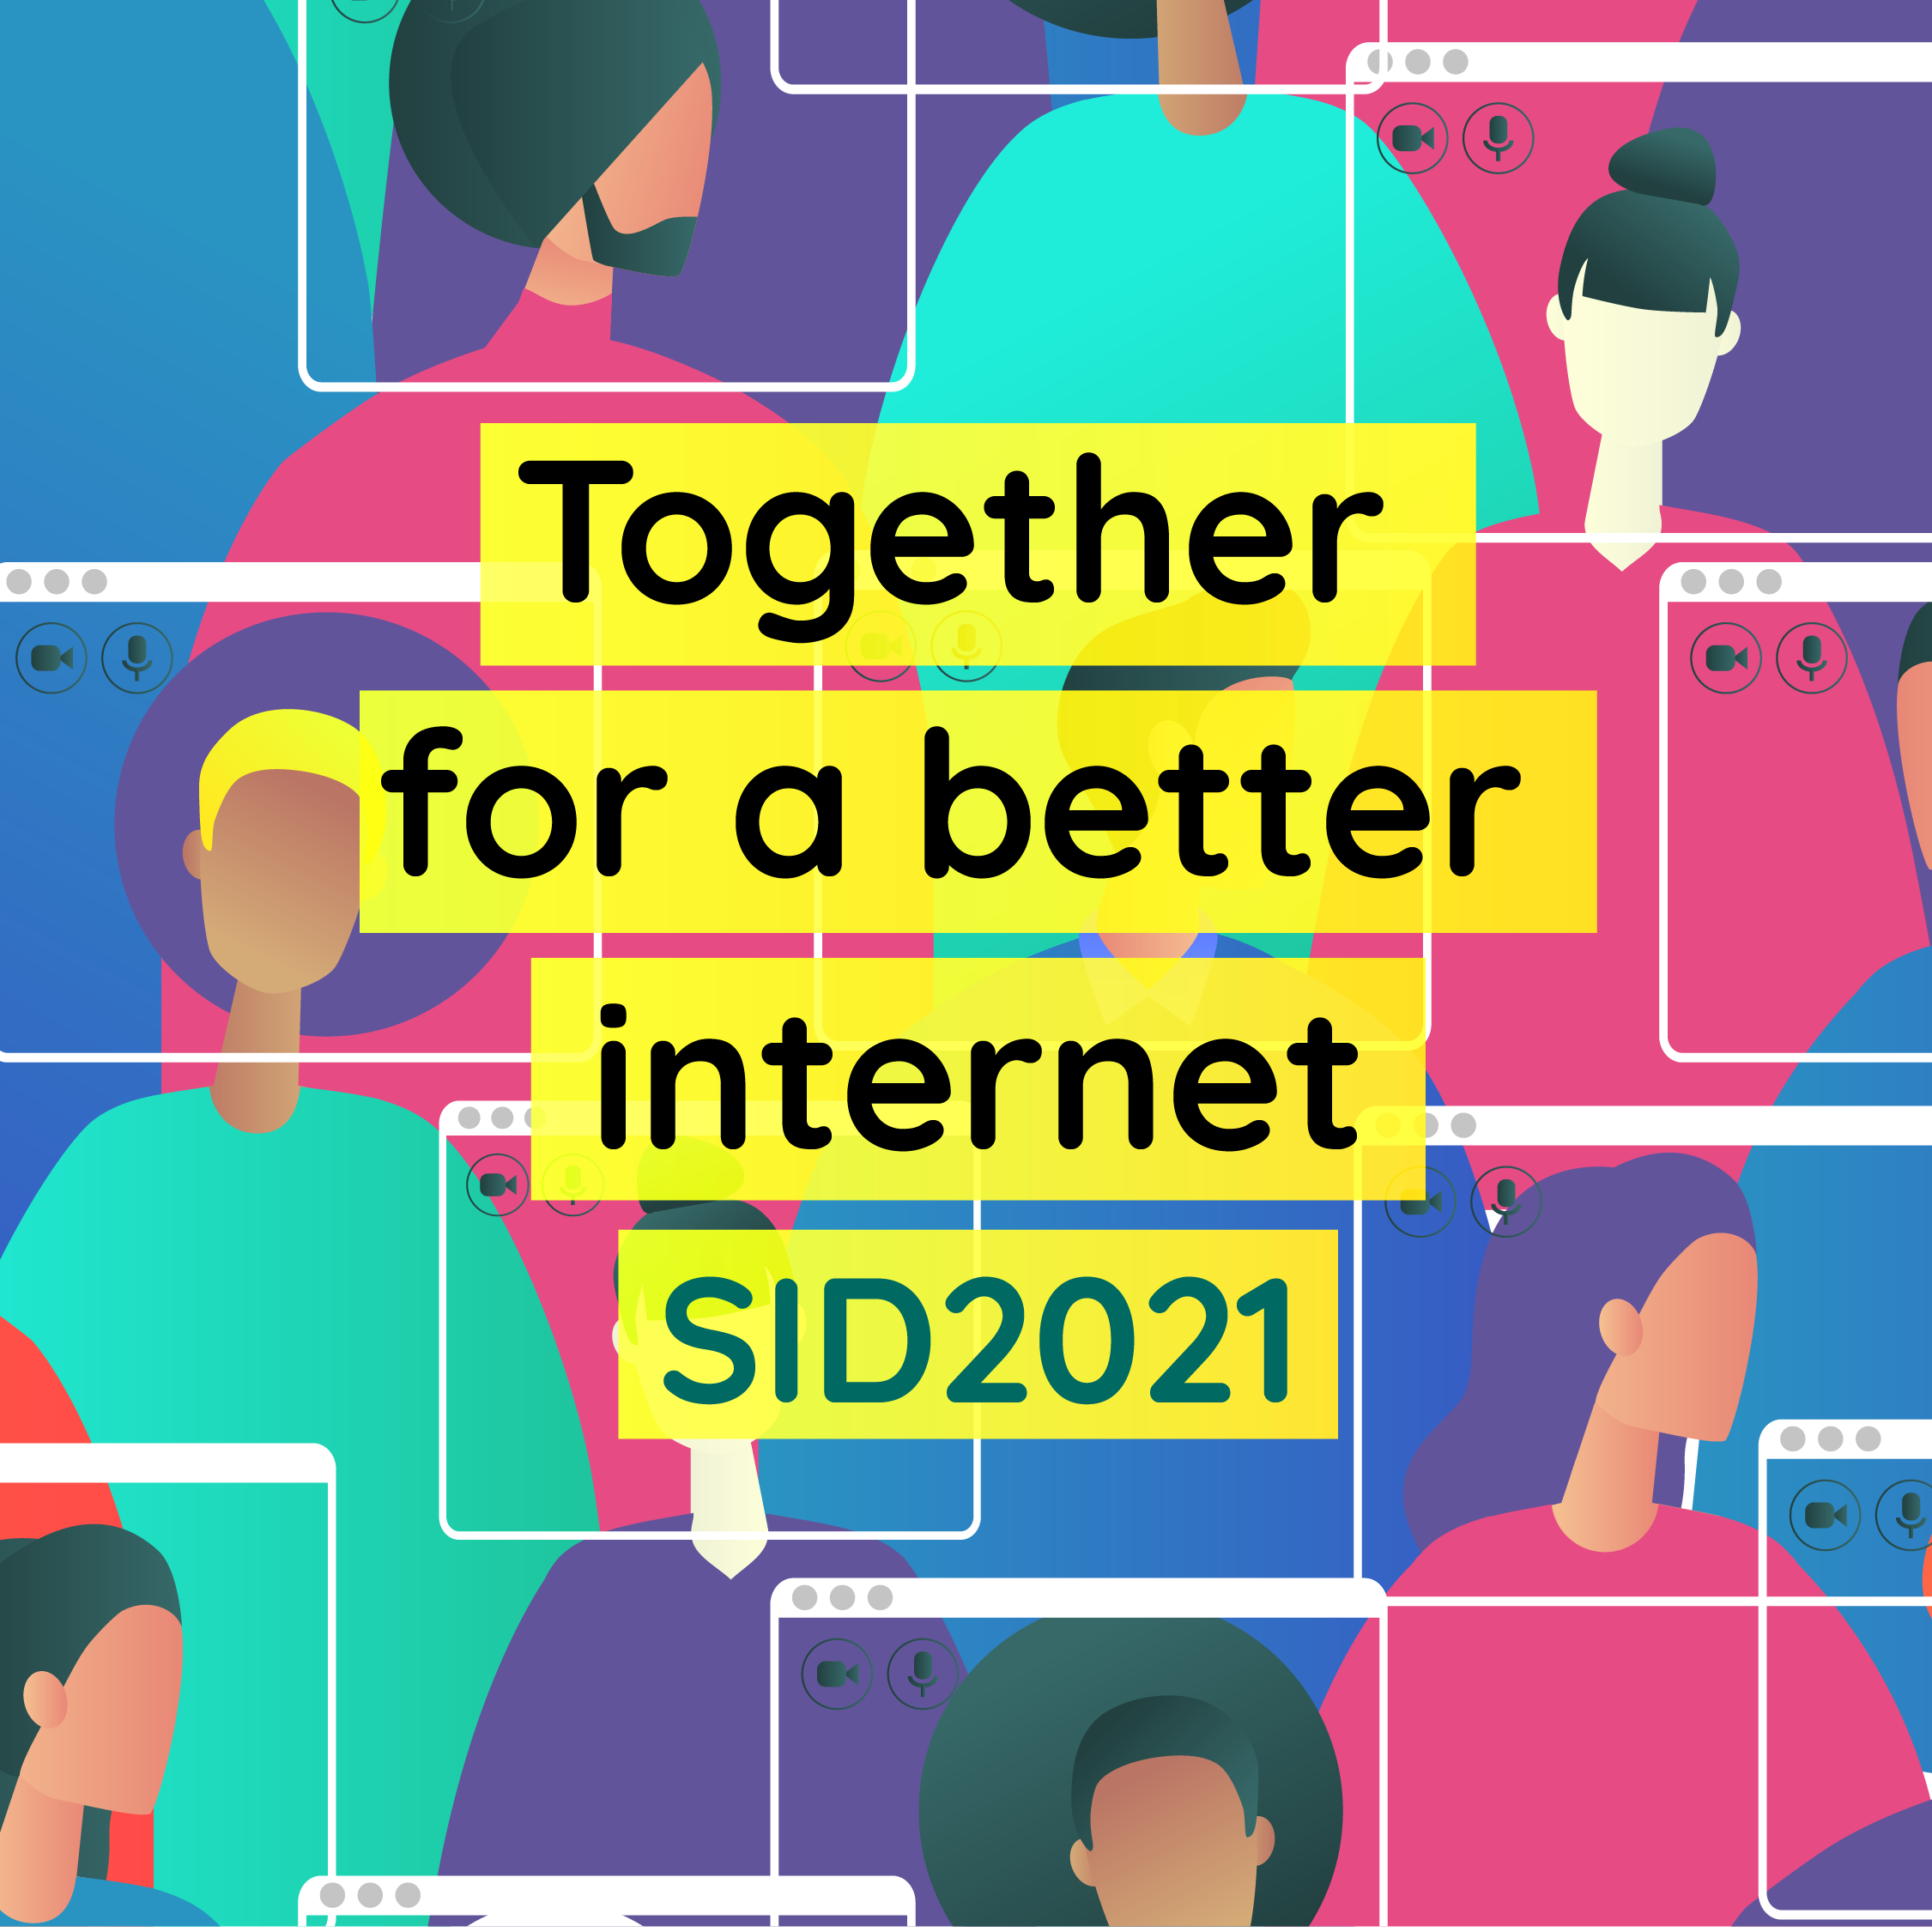 SID - Safer Internet Day 2021